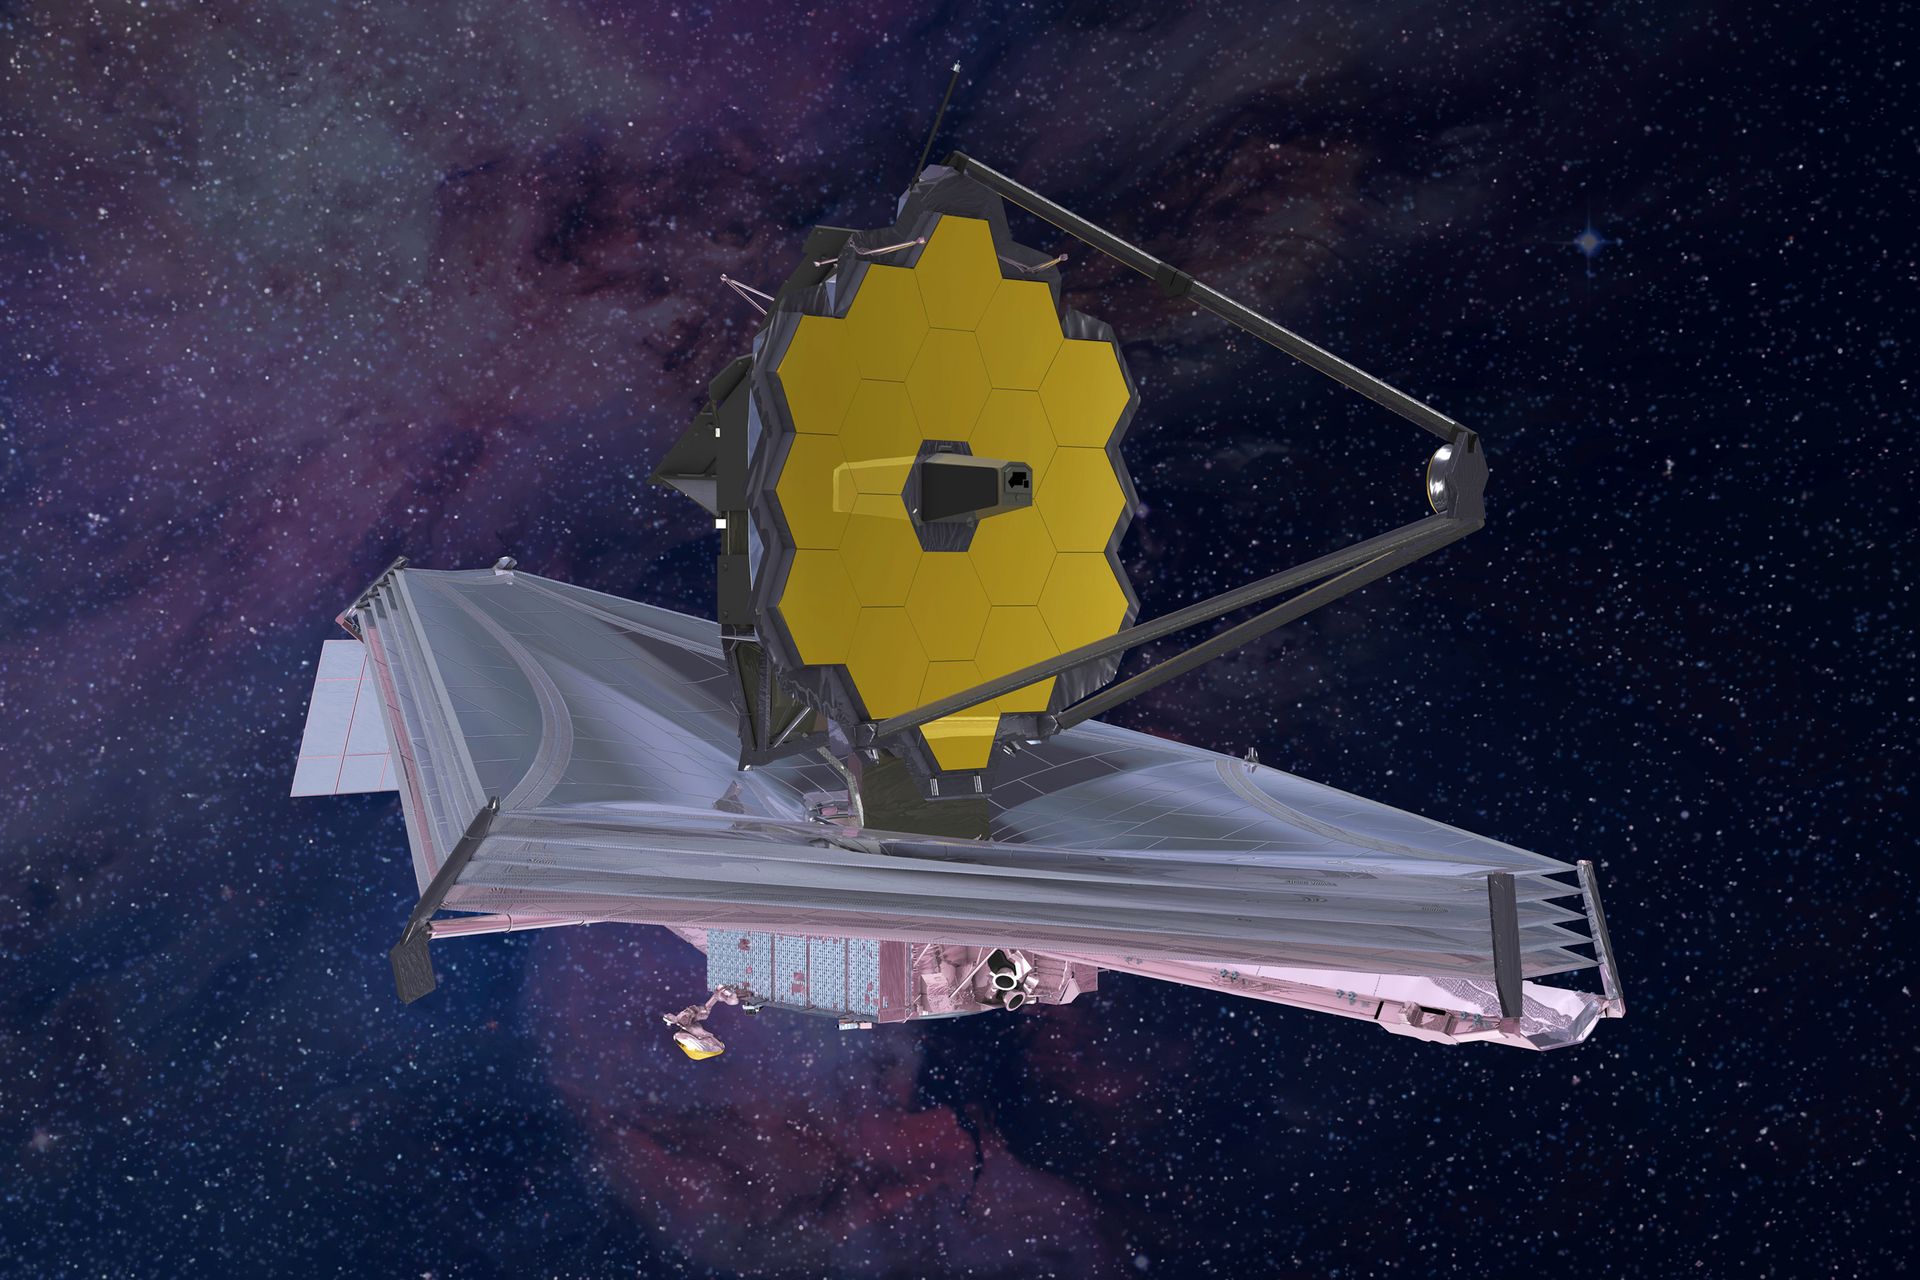 Romteleskopet ser litt ut som et romskip. Det gule speilet på toppen av teleskopet ser ut som en slags parabol-antenne